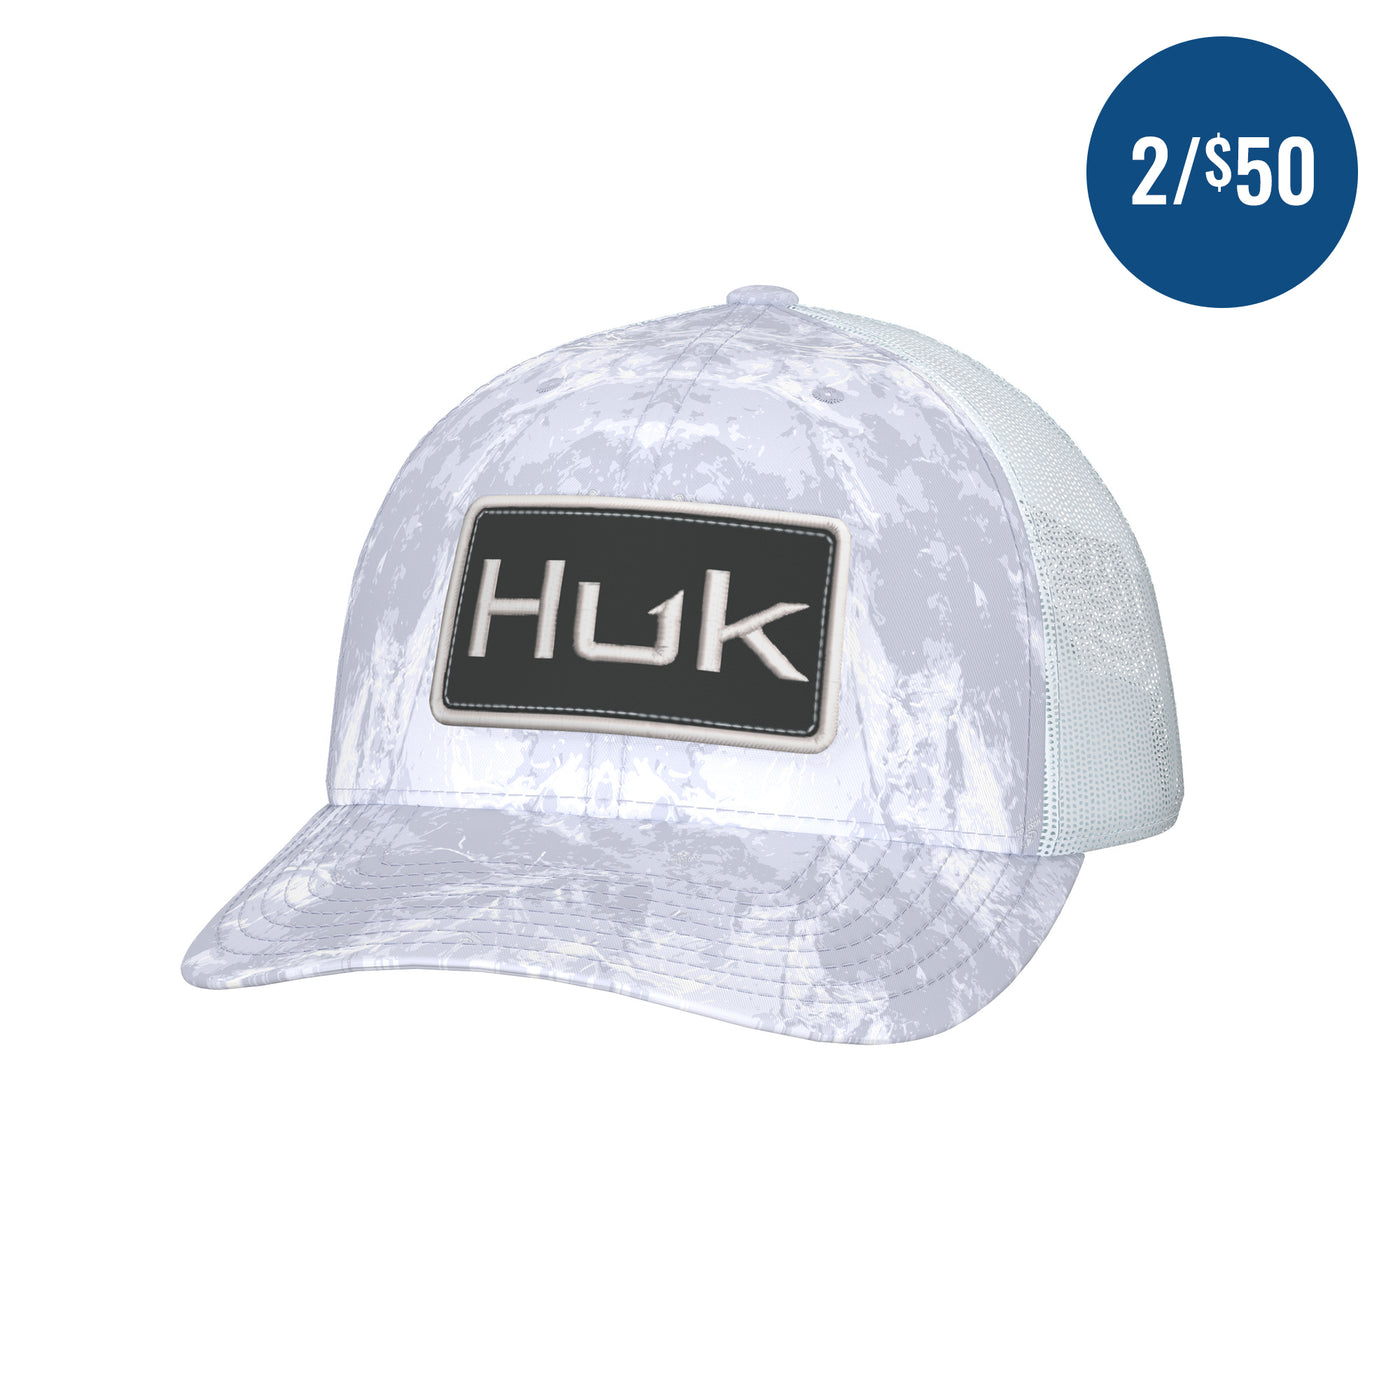 Huk Mossy Oak Trucker Hat